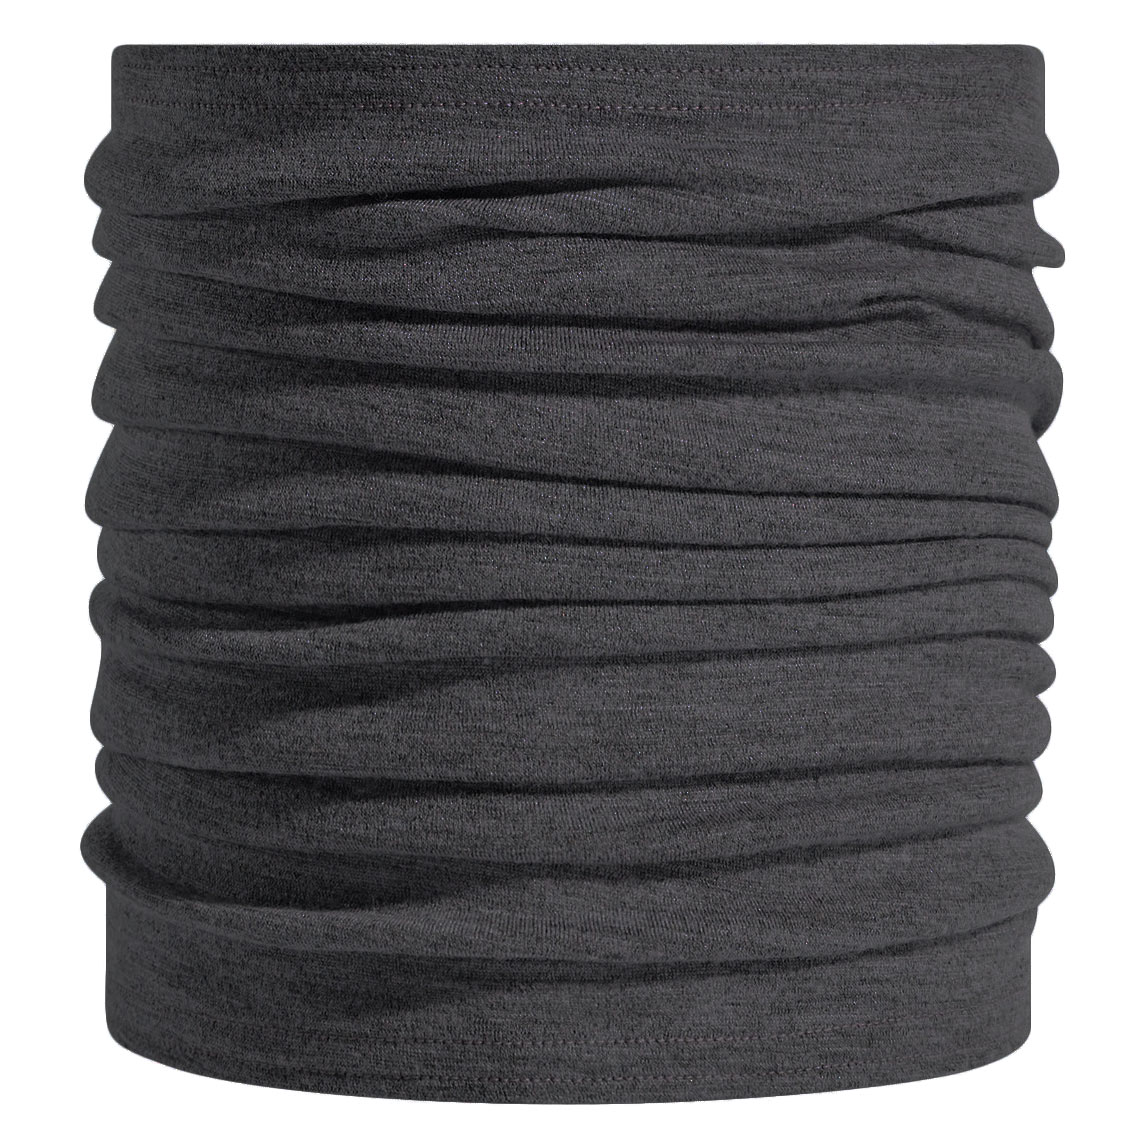 Picture of Odlo Revelstoke Performance Wool tube - odlo graphite grey melange